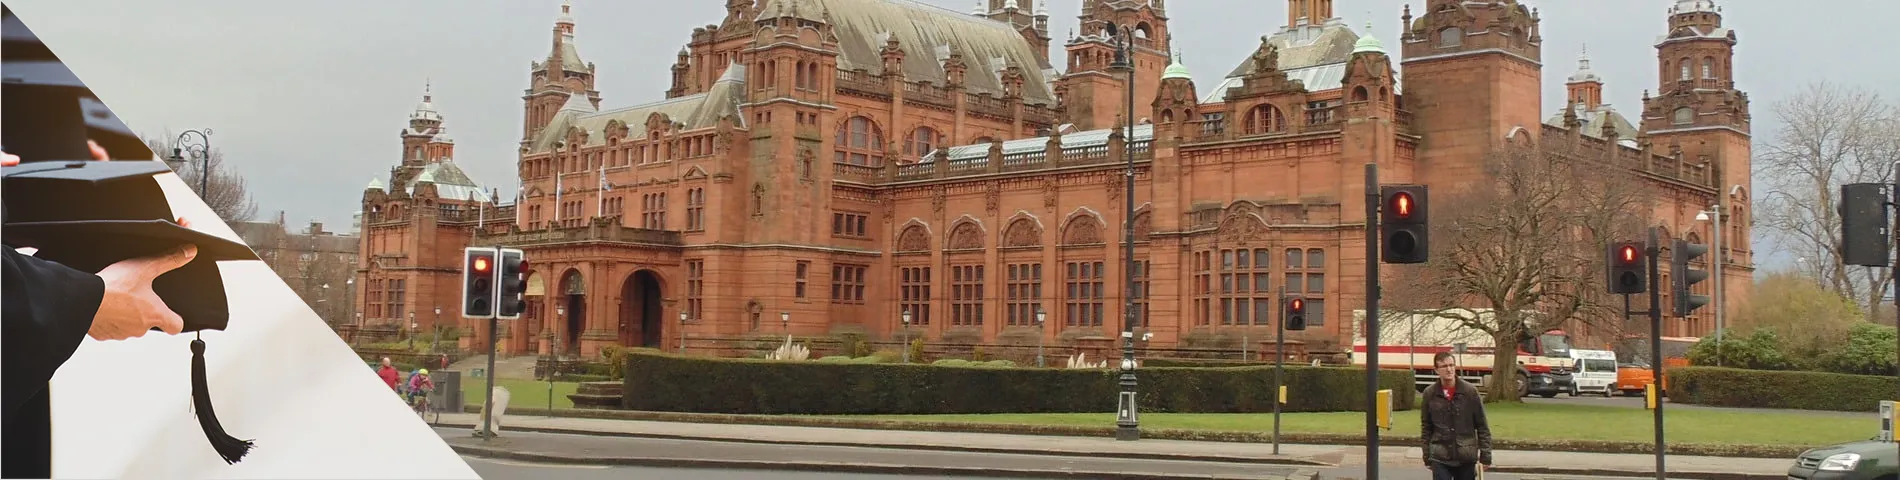 Glasgow - Corsi Universitari